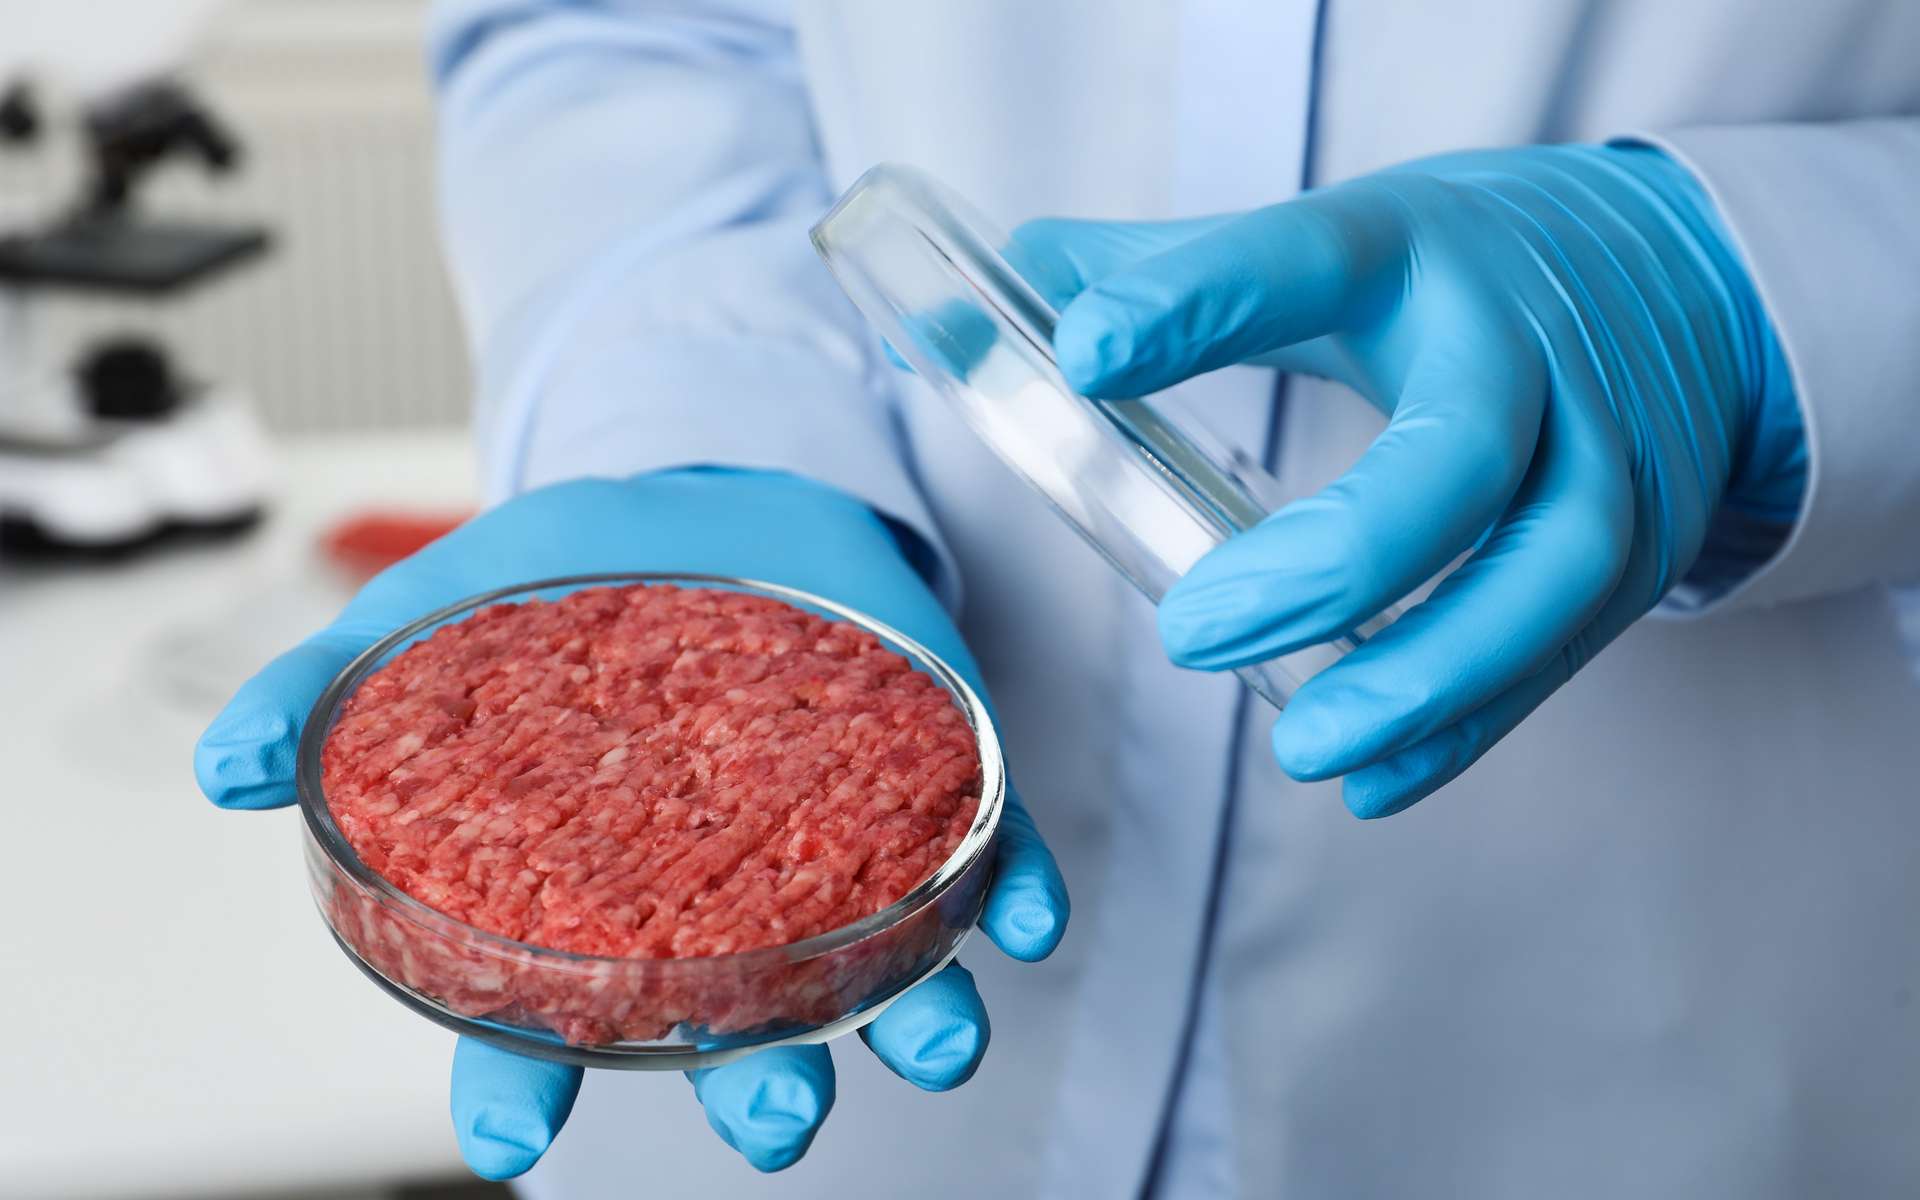 Les données scientifiques disponibles sont rares pour évaluer la qualité sanitaire et nutritionnelle de la viande in vitro. © New Africa, Shutterstock